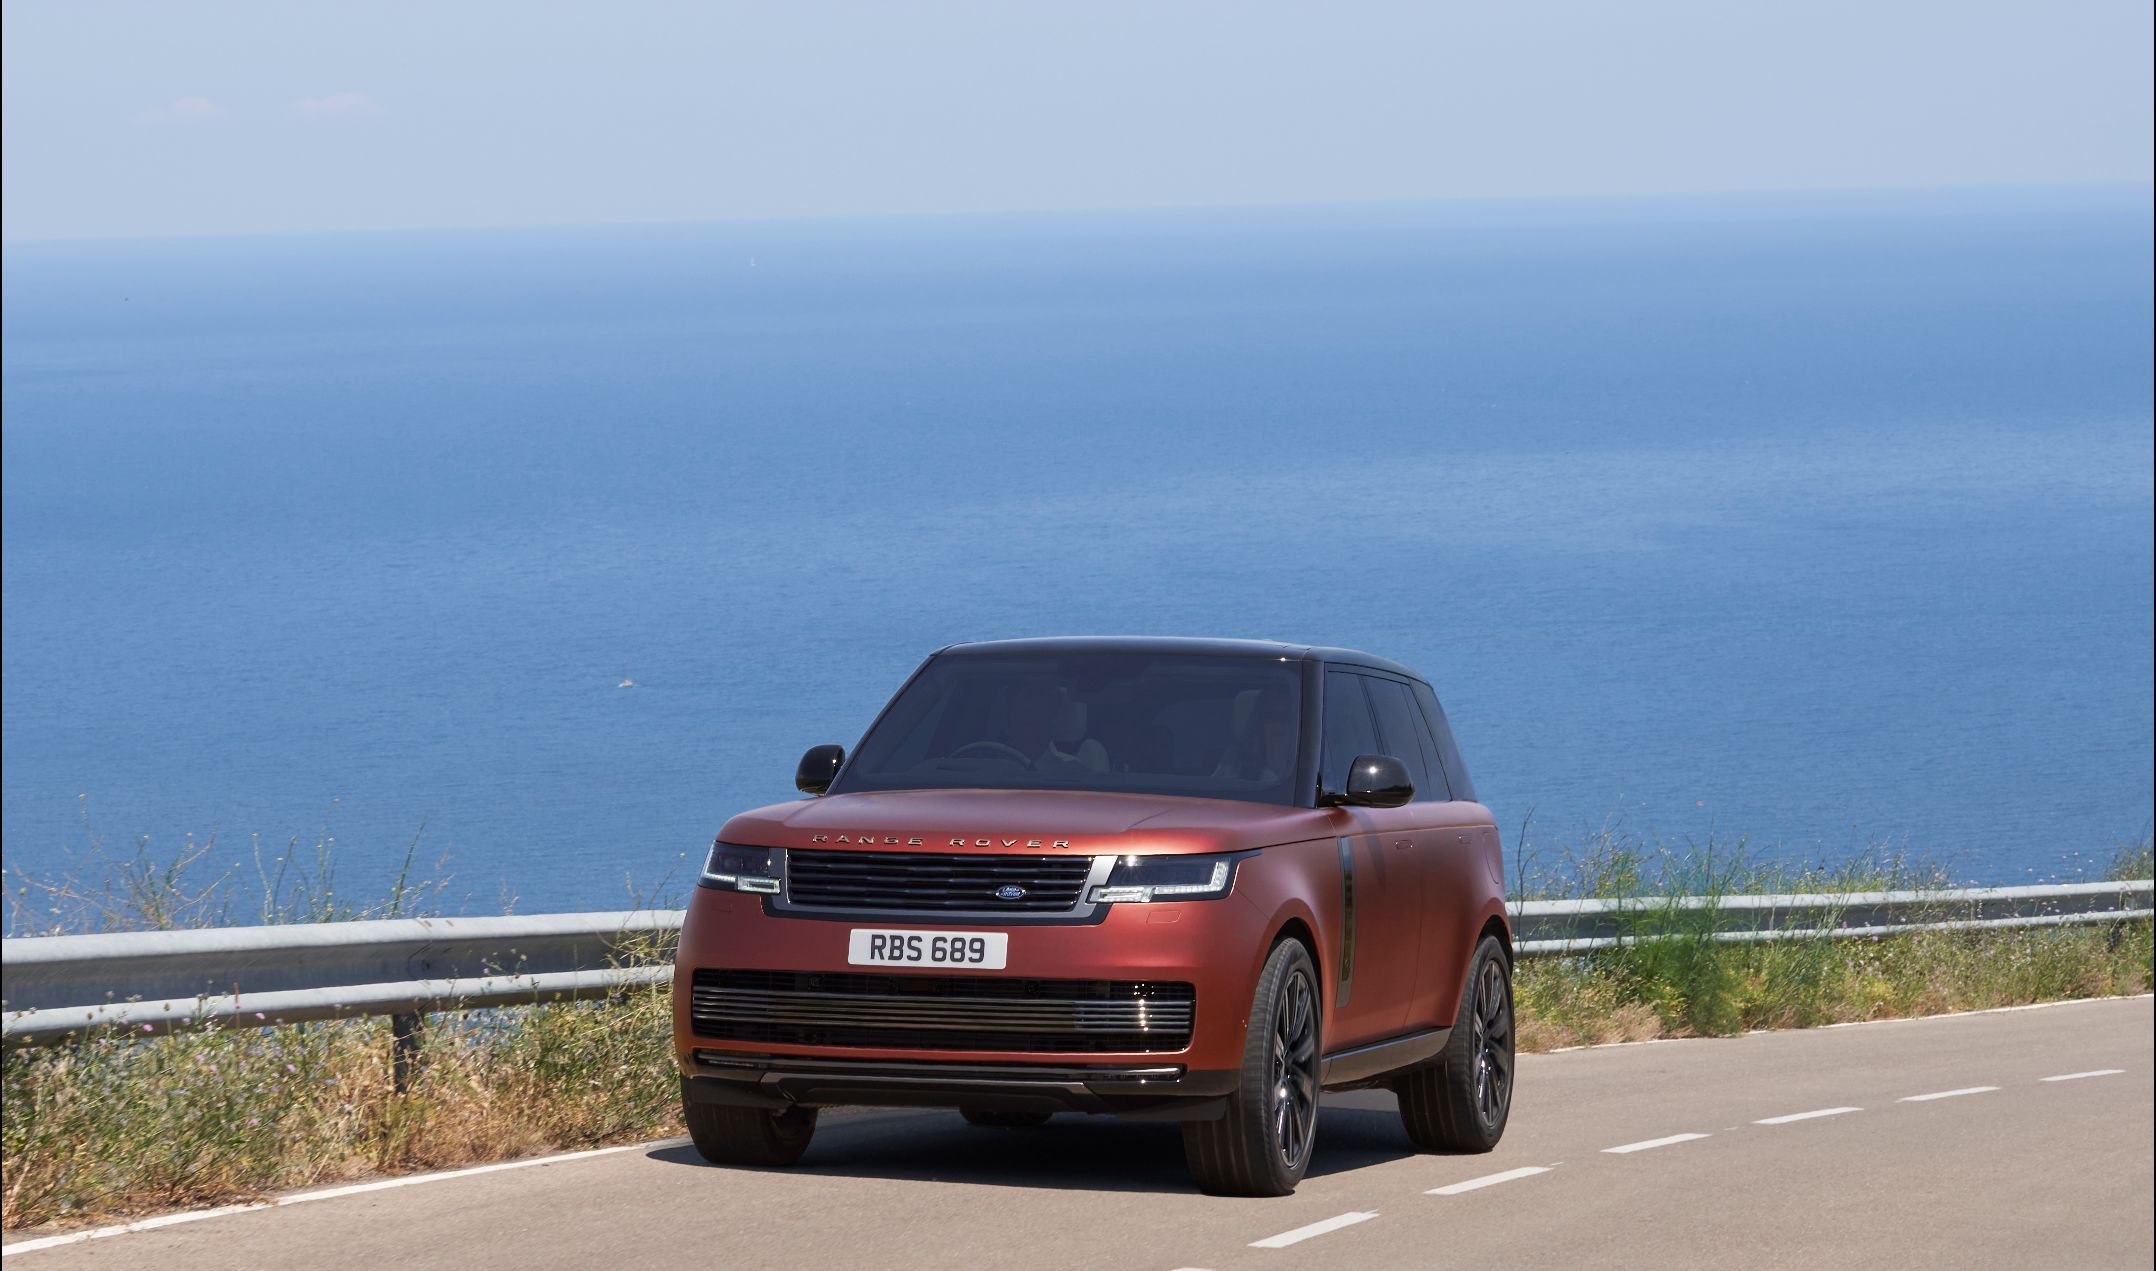 synoniemenlijst reinigen bedrag All-New Range Rover Is Minimalist on the Outside, Loaded on the Inside